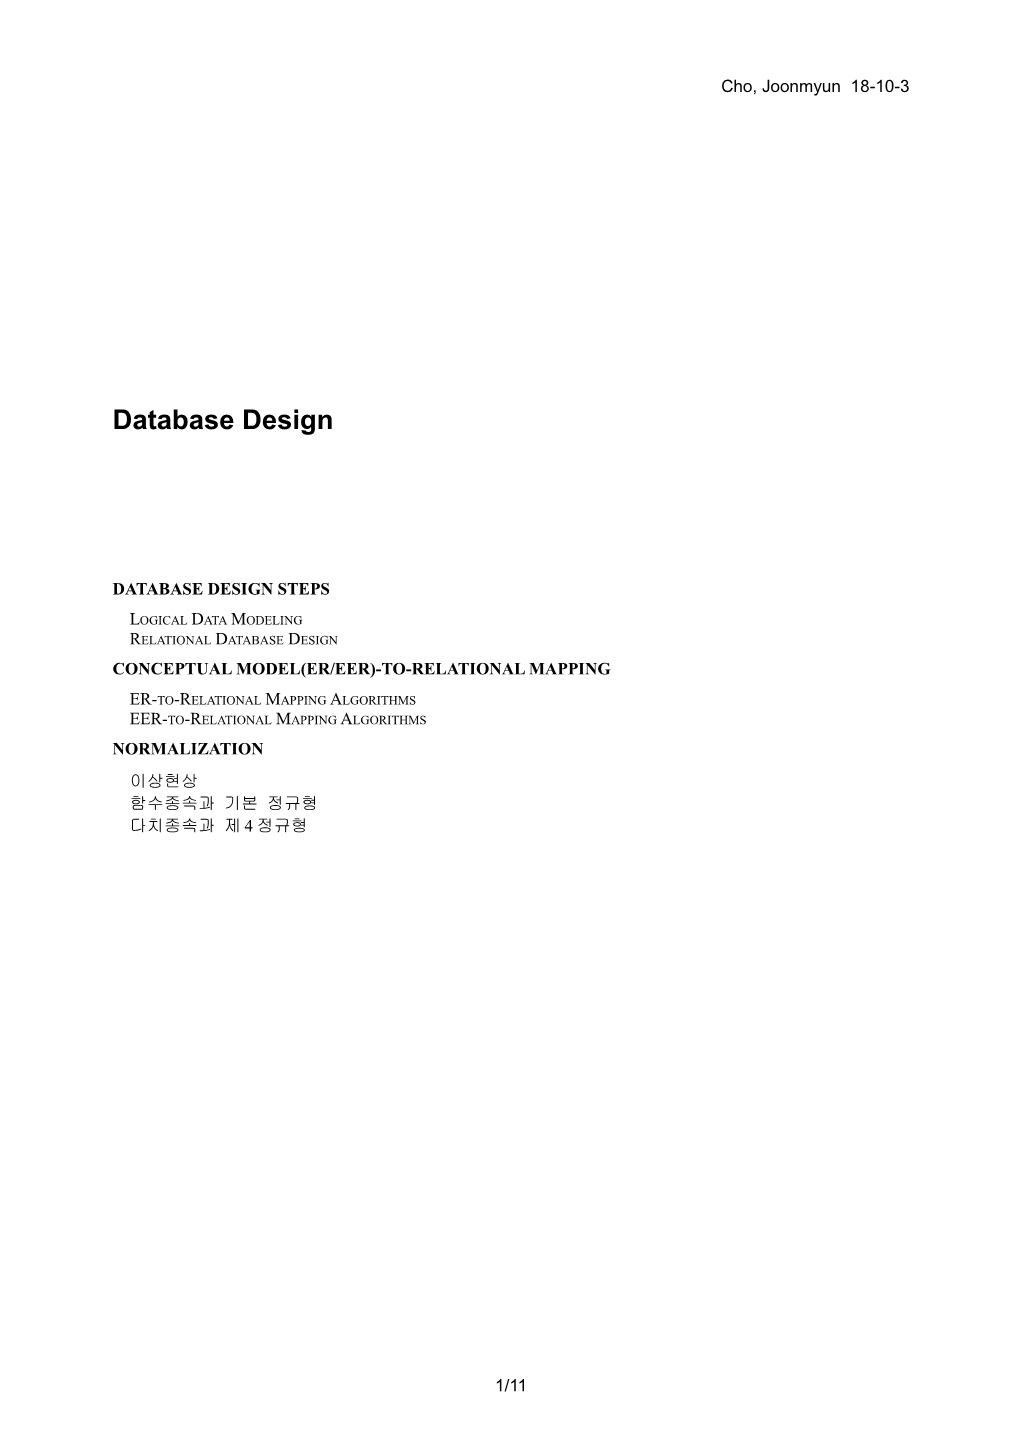 Database Design Steps